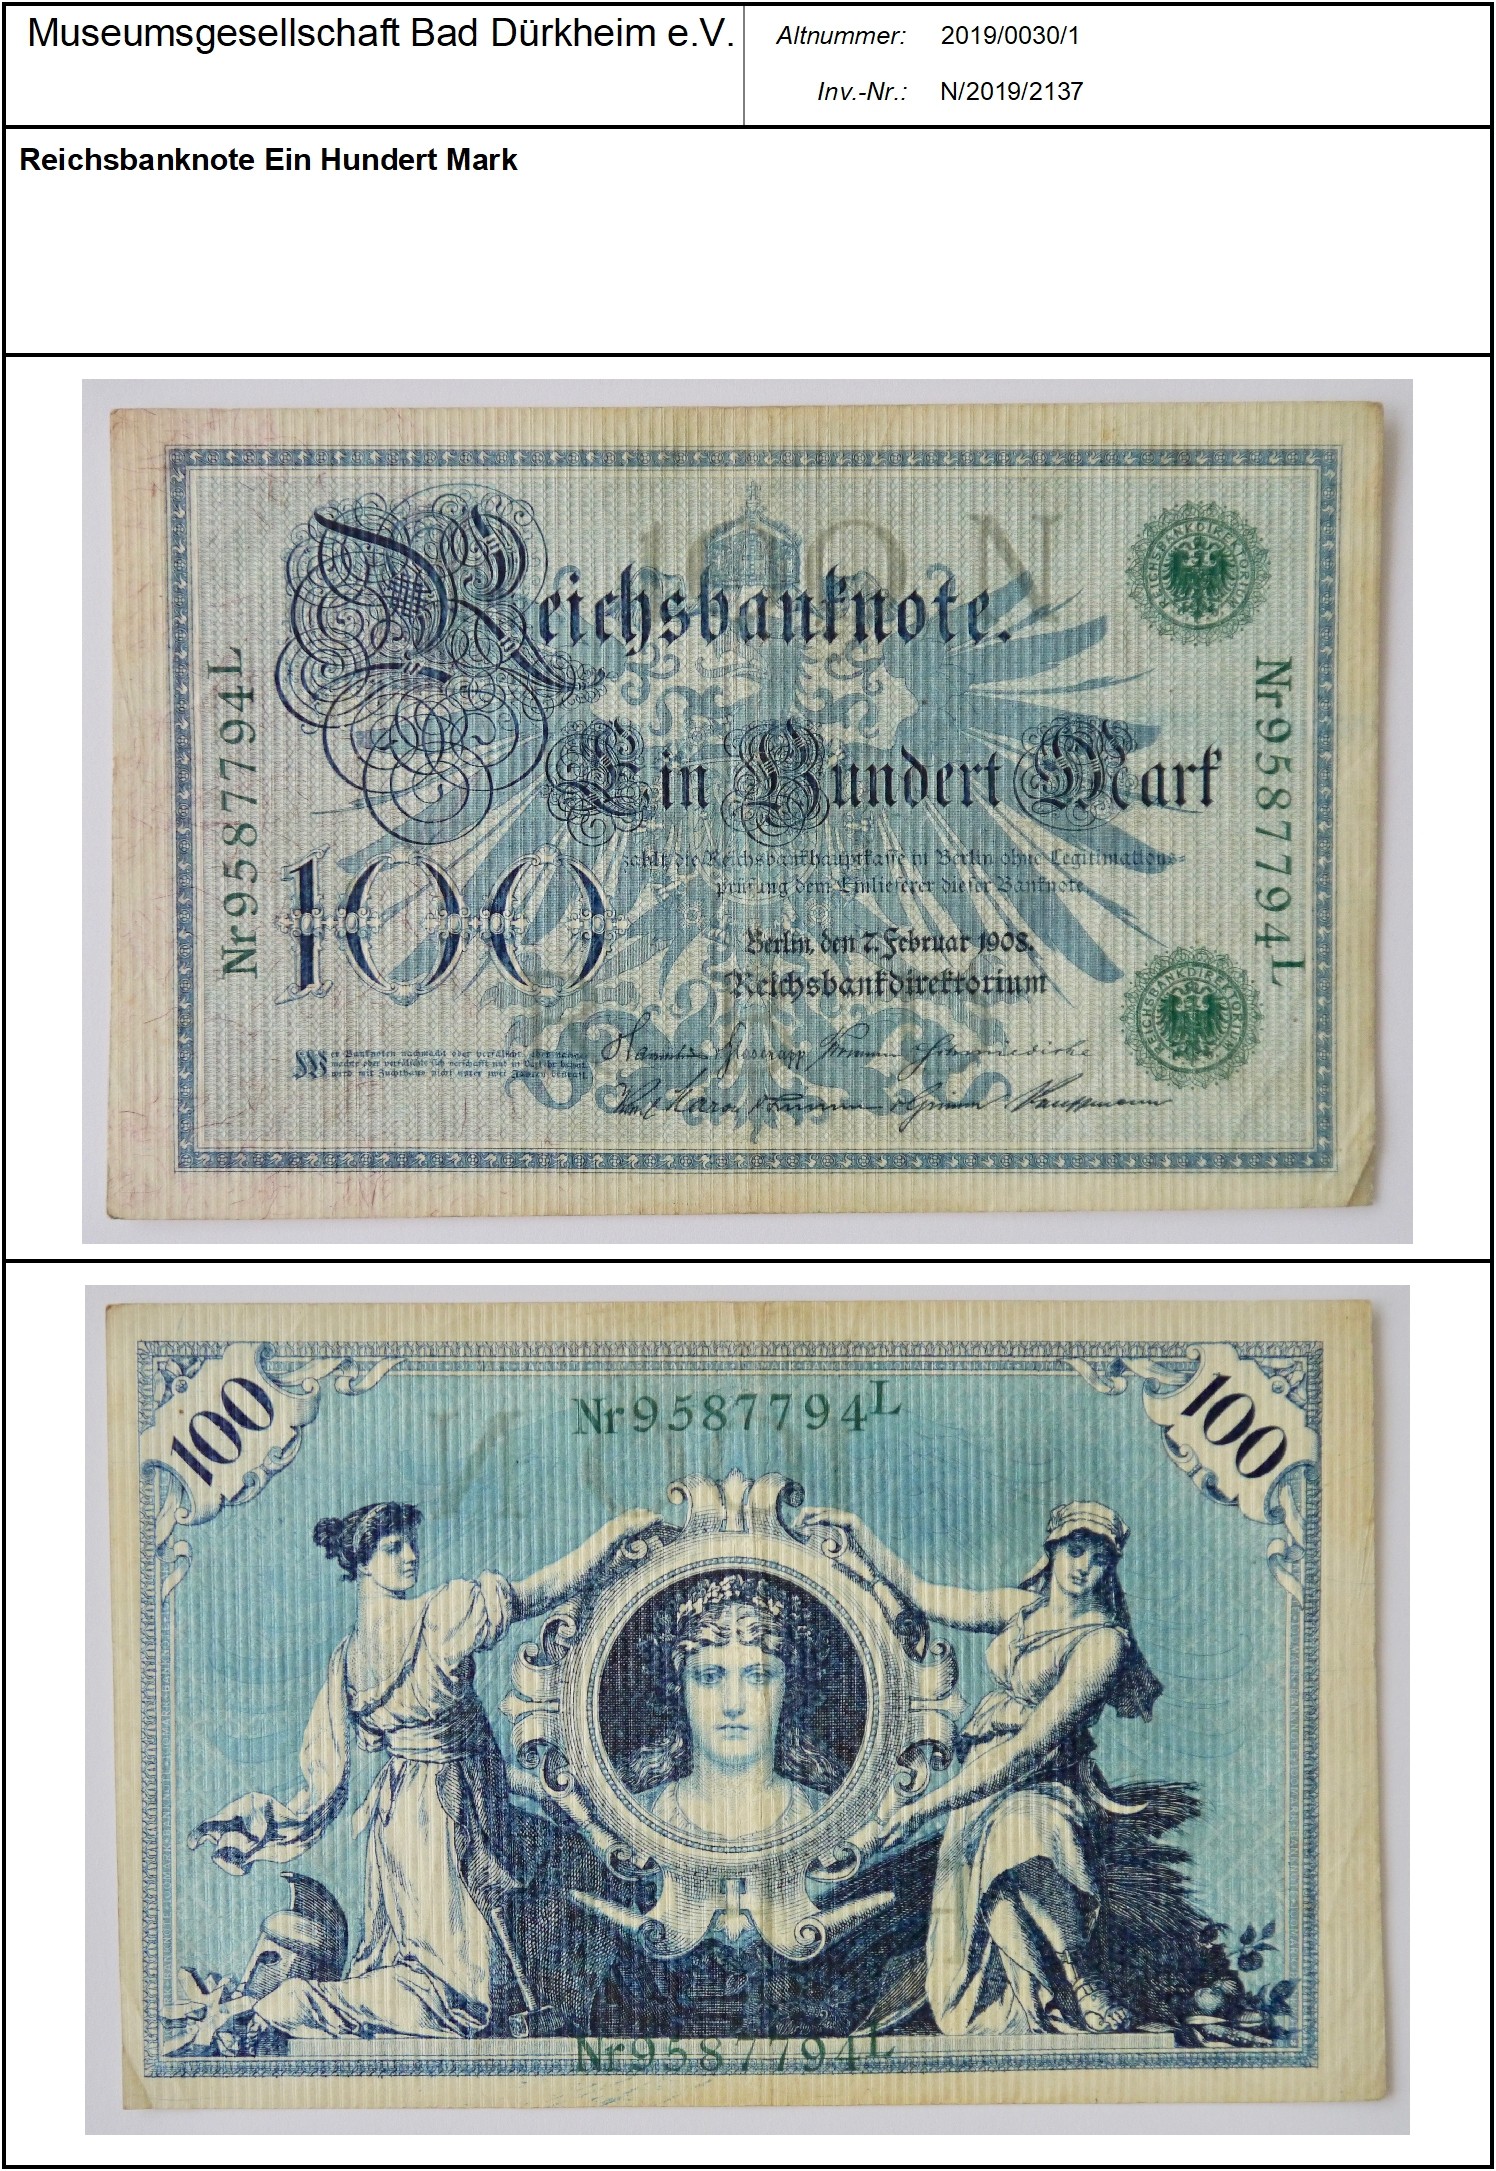 Reichsbanknote Ein Hundert Mark
Serien-Nummer: Nr.9587794L (Museumsgesellschaft Bad Dürkheim e.V. CC BY-NC-SA)